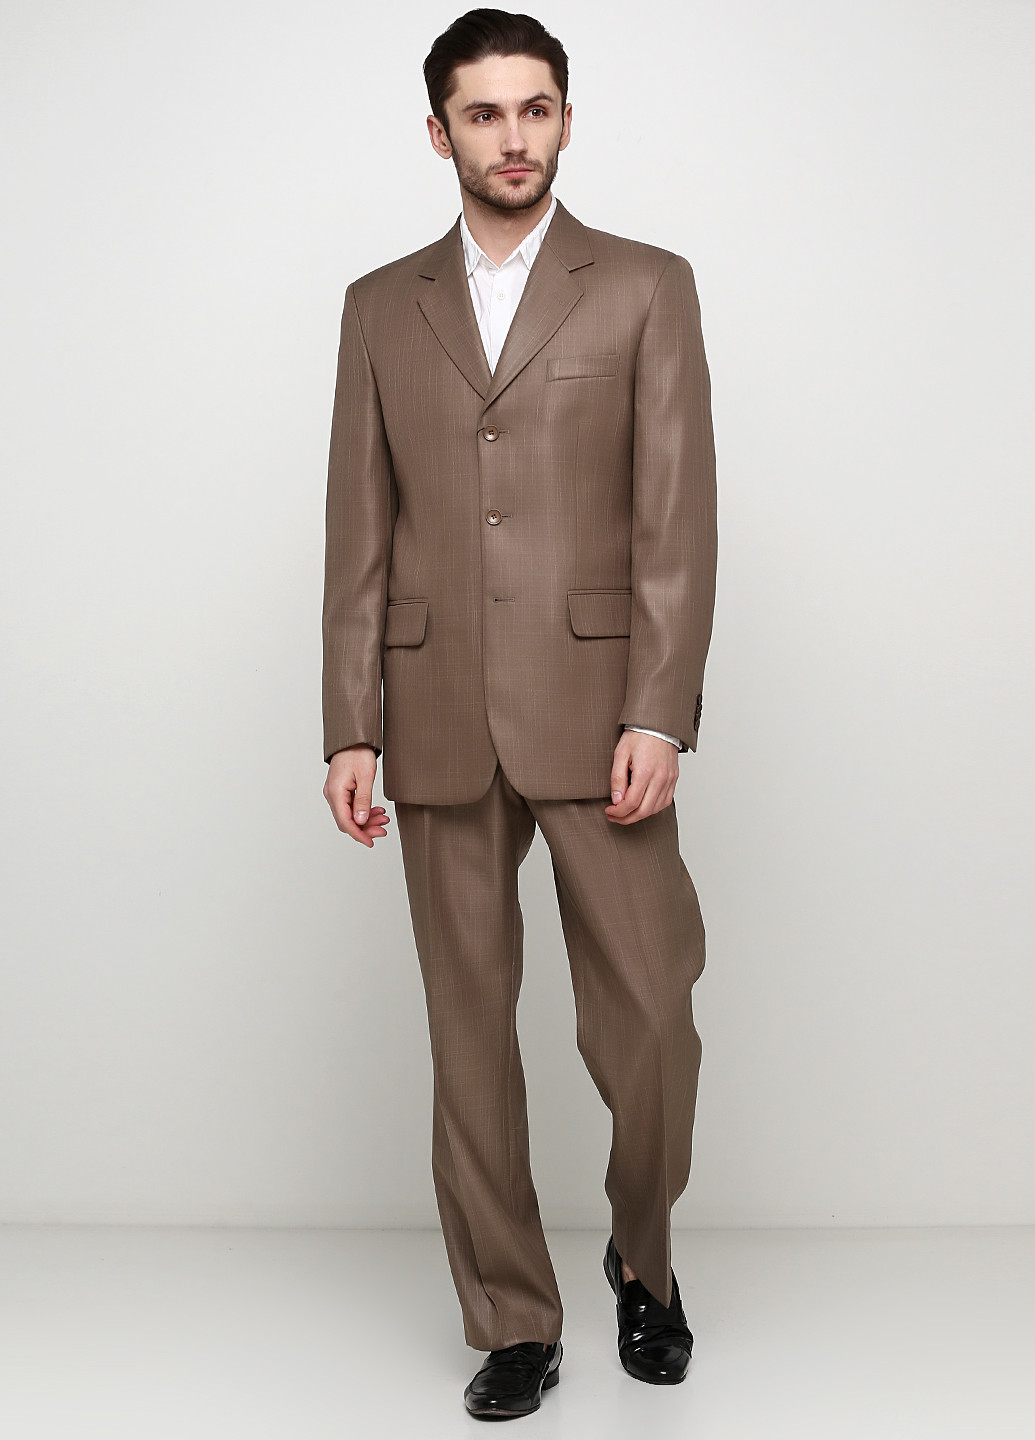 Бронзовый демисезонный костюм (пиджак, брюки) брючный Galant